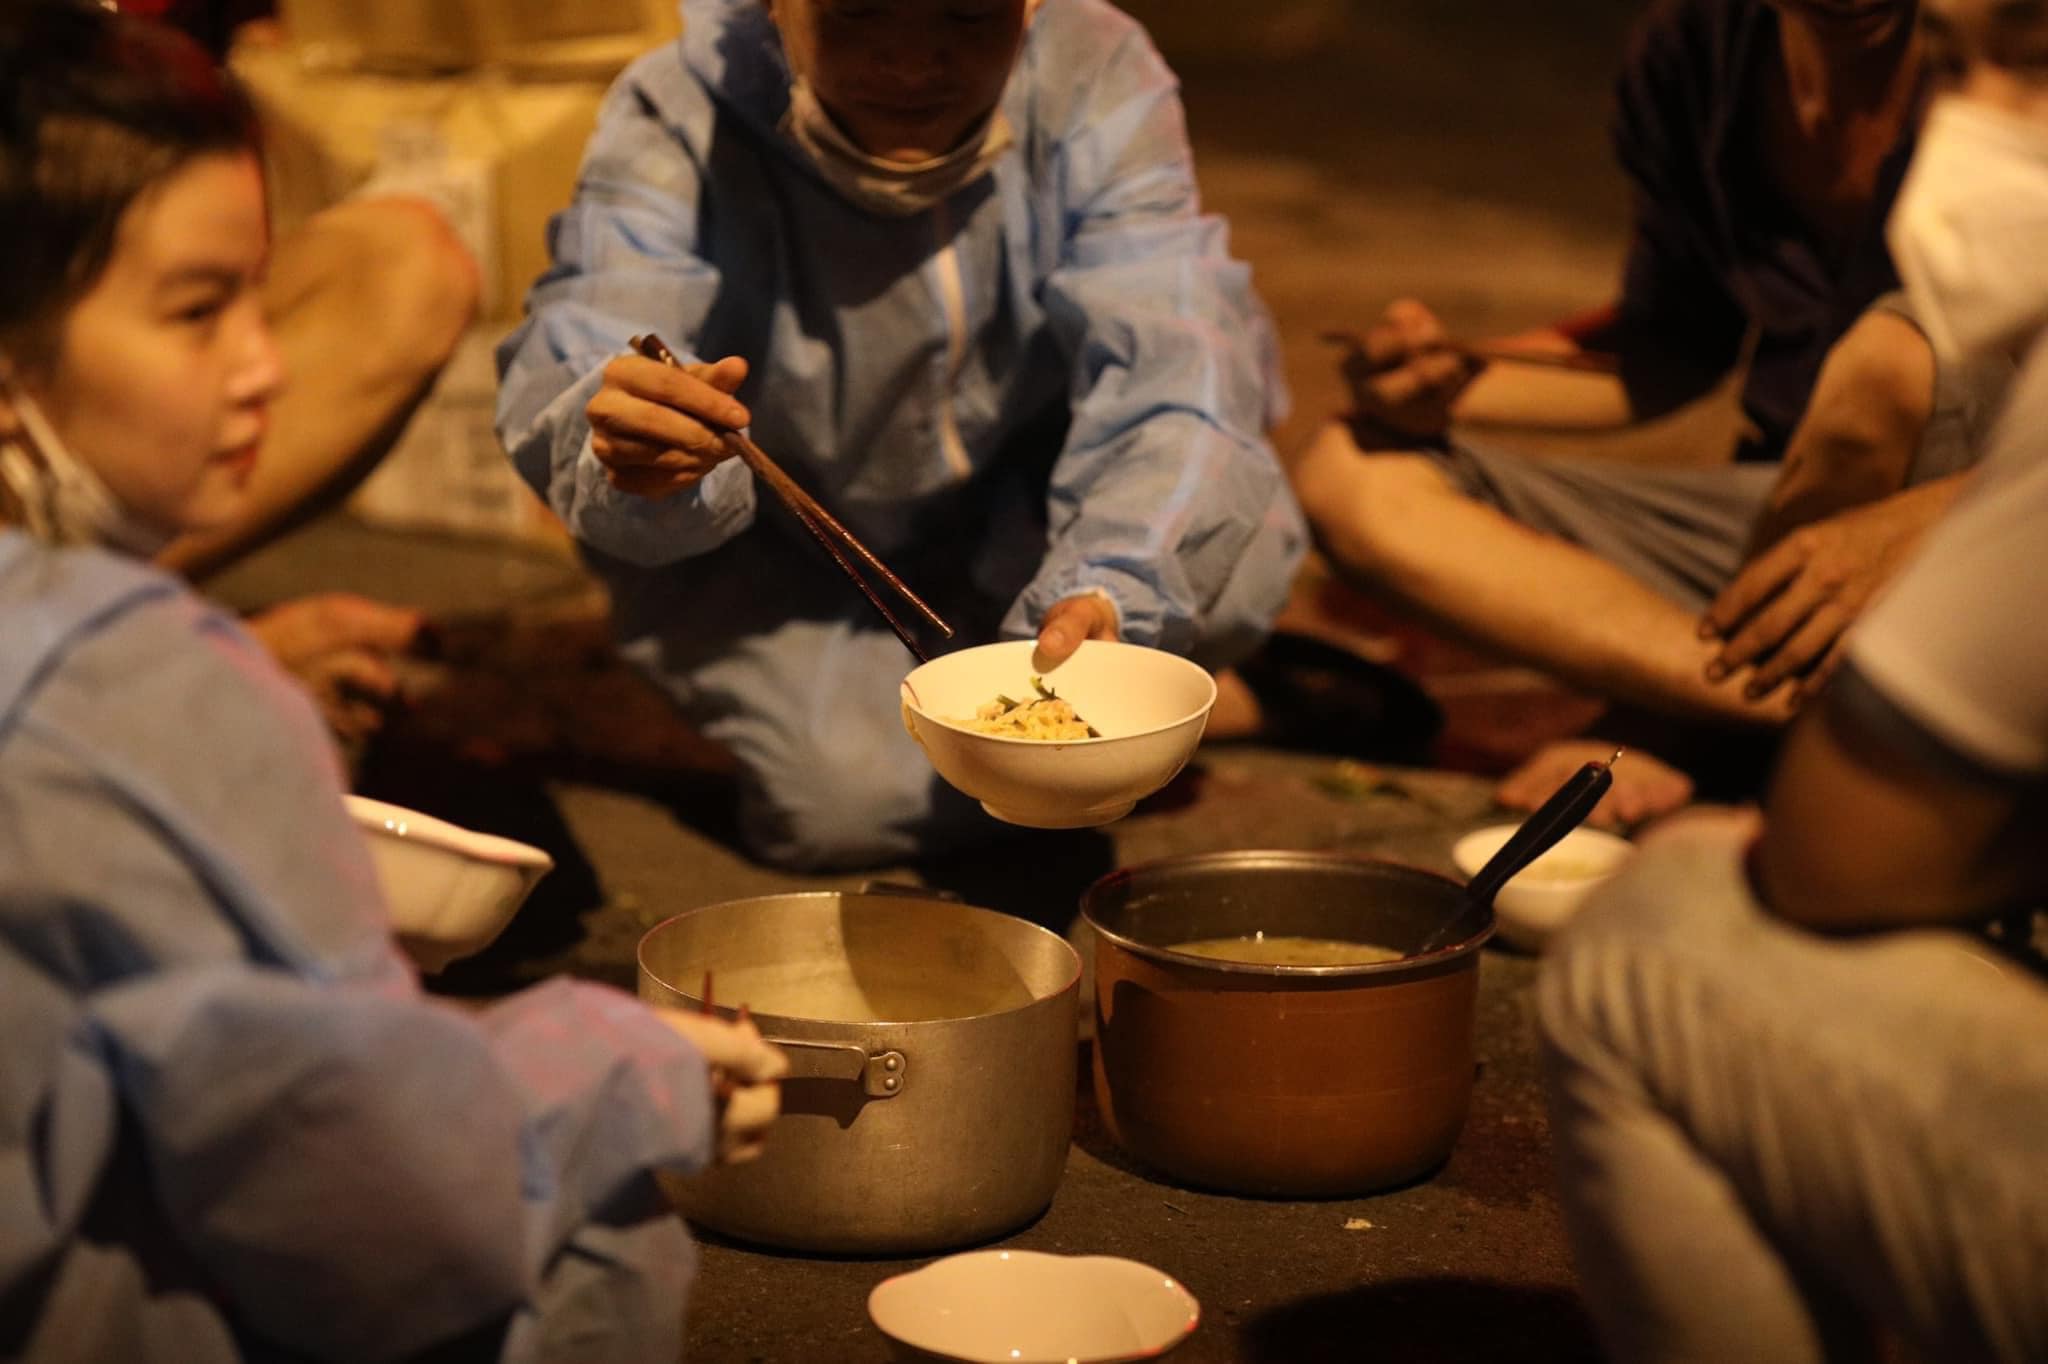 Xót xa hình ảnh bữa ăn vội trên nền đất của các tình nguyện viên chống dịch - ảnh 1